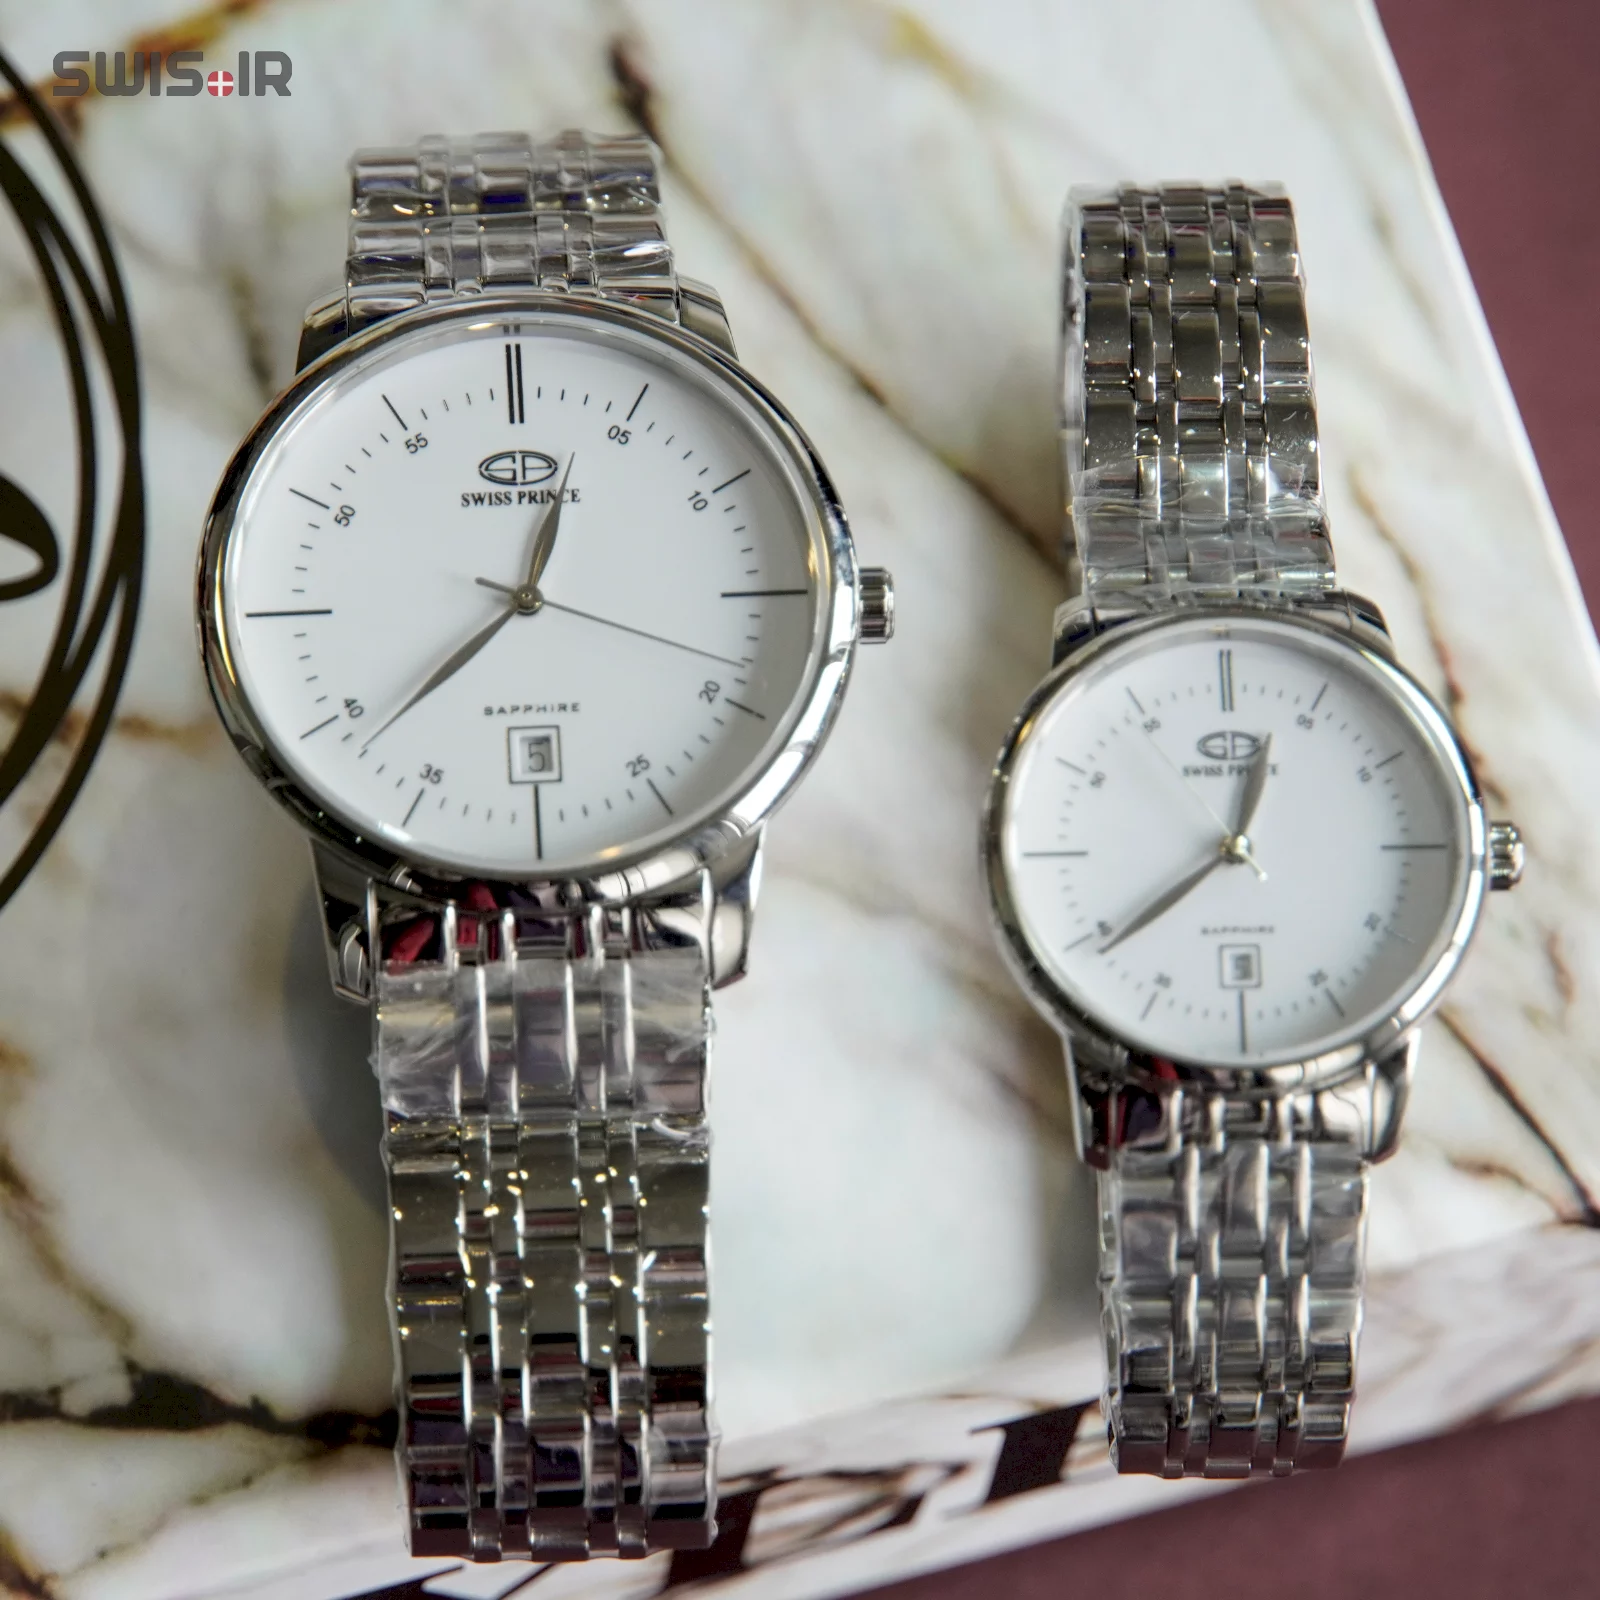 ست ساعت مچی نامزدی برند سوئیس پرینس مدل Silver-W-817